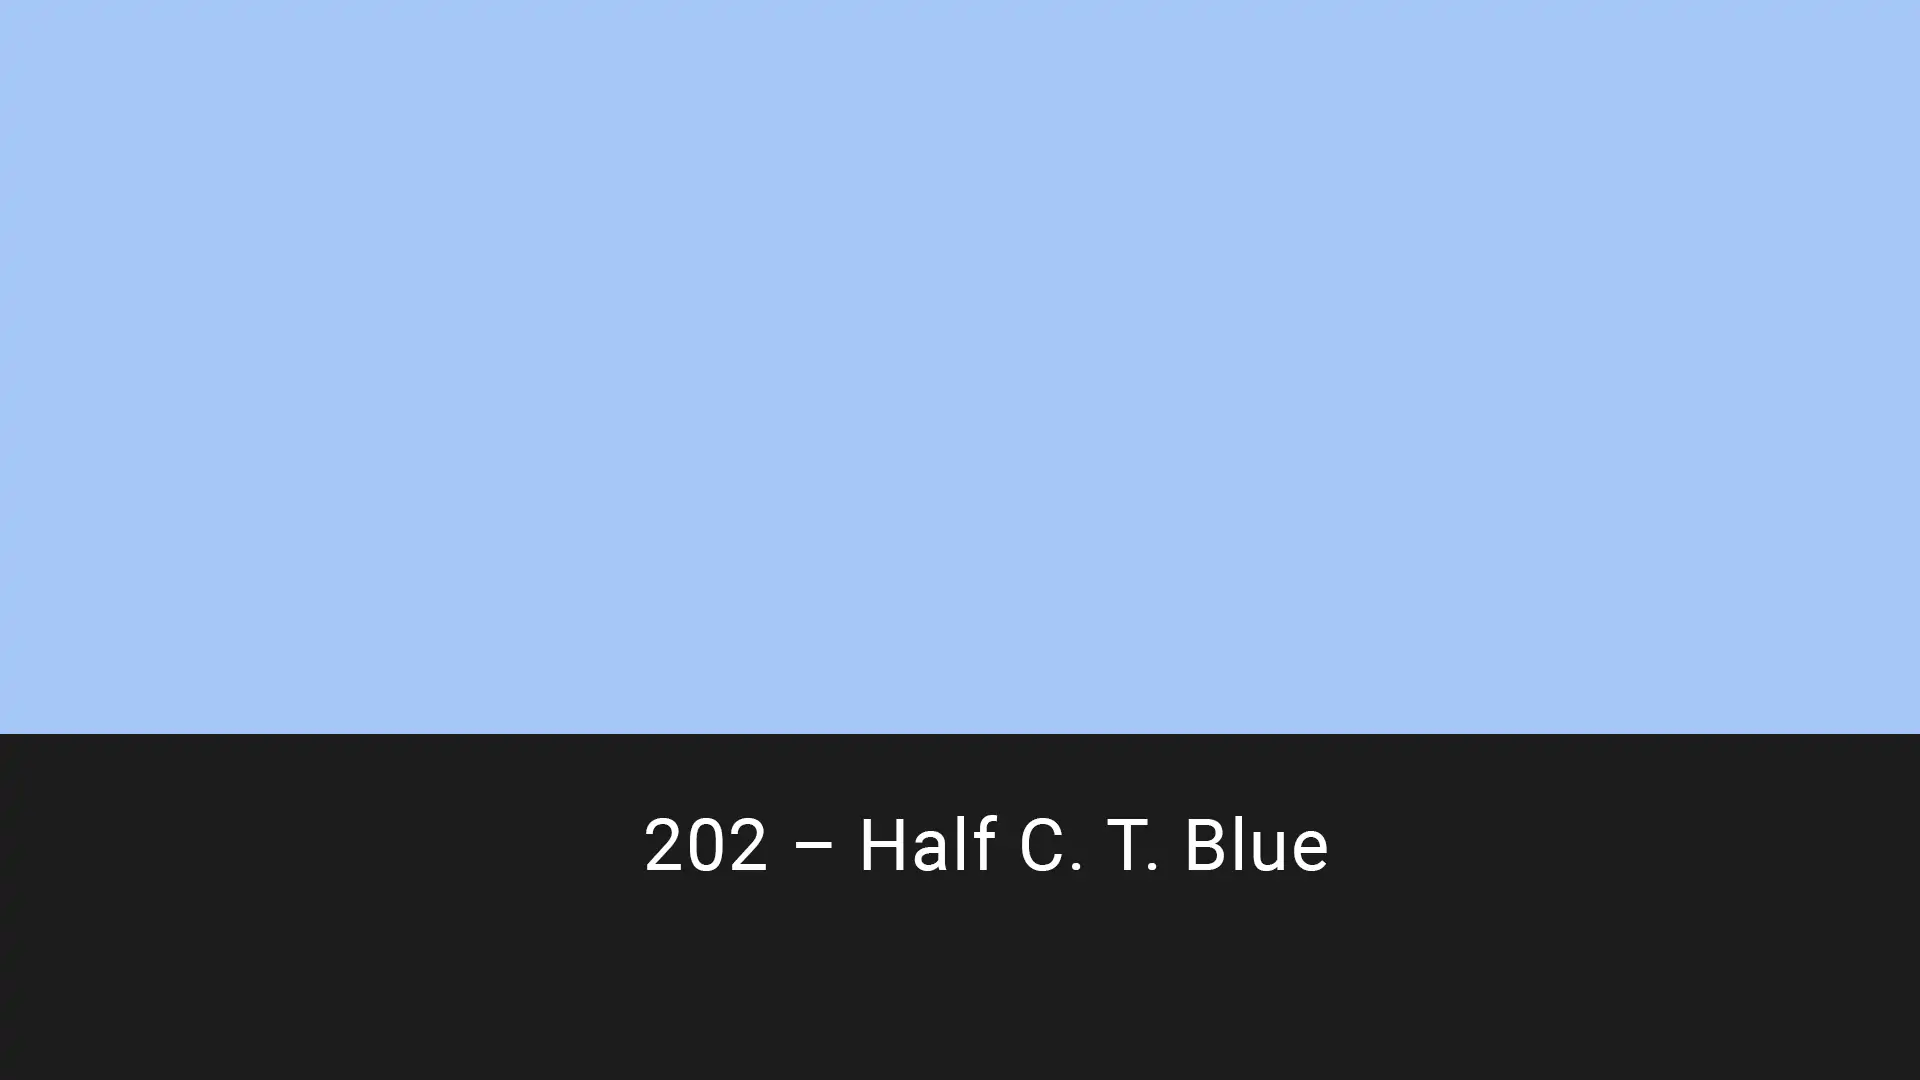 Cotech filters 202 Half C.T. Blue